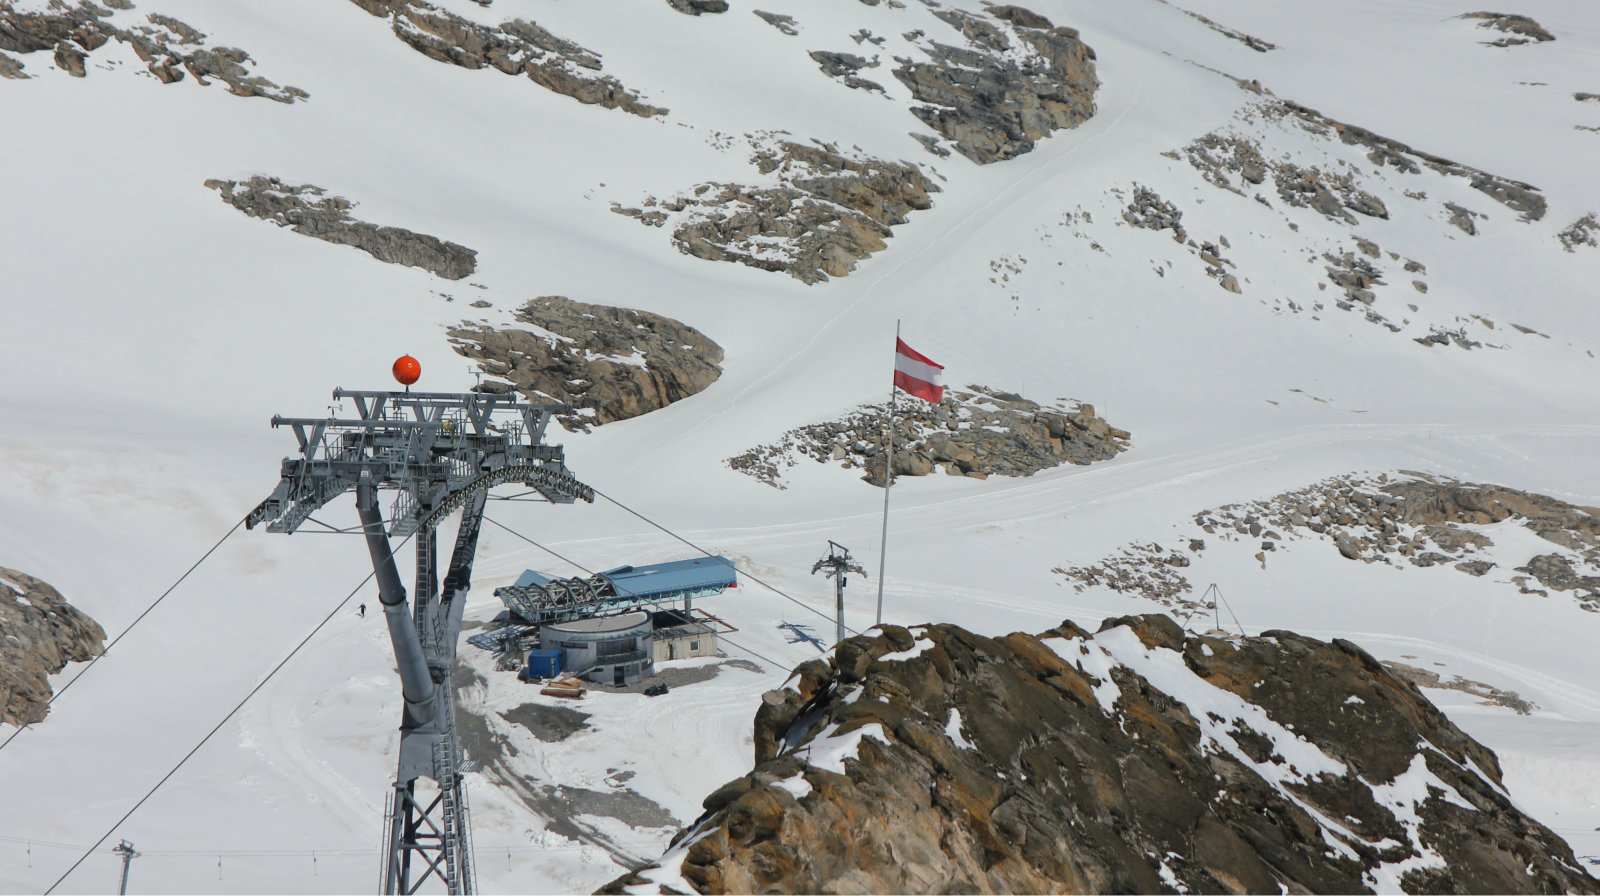 A Gletscherjet 4-en kész a kötélpálya, háttérben a Gratbahn-t bontják